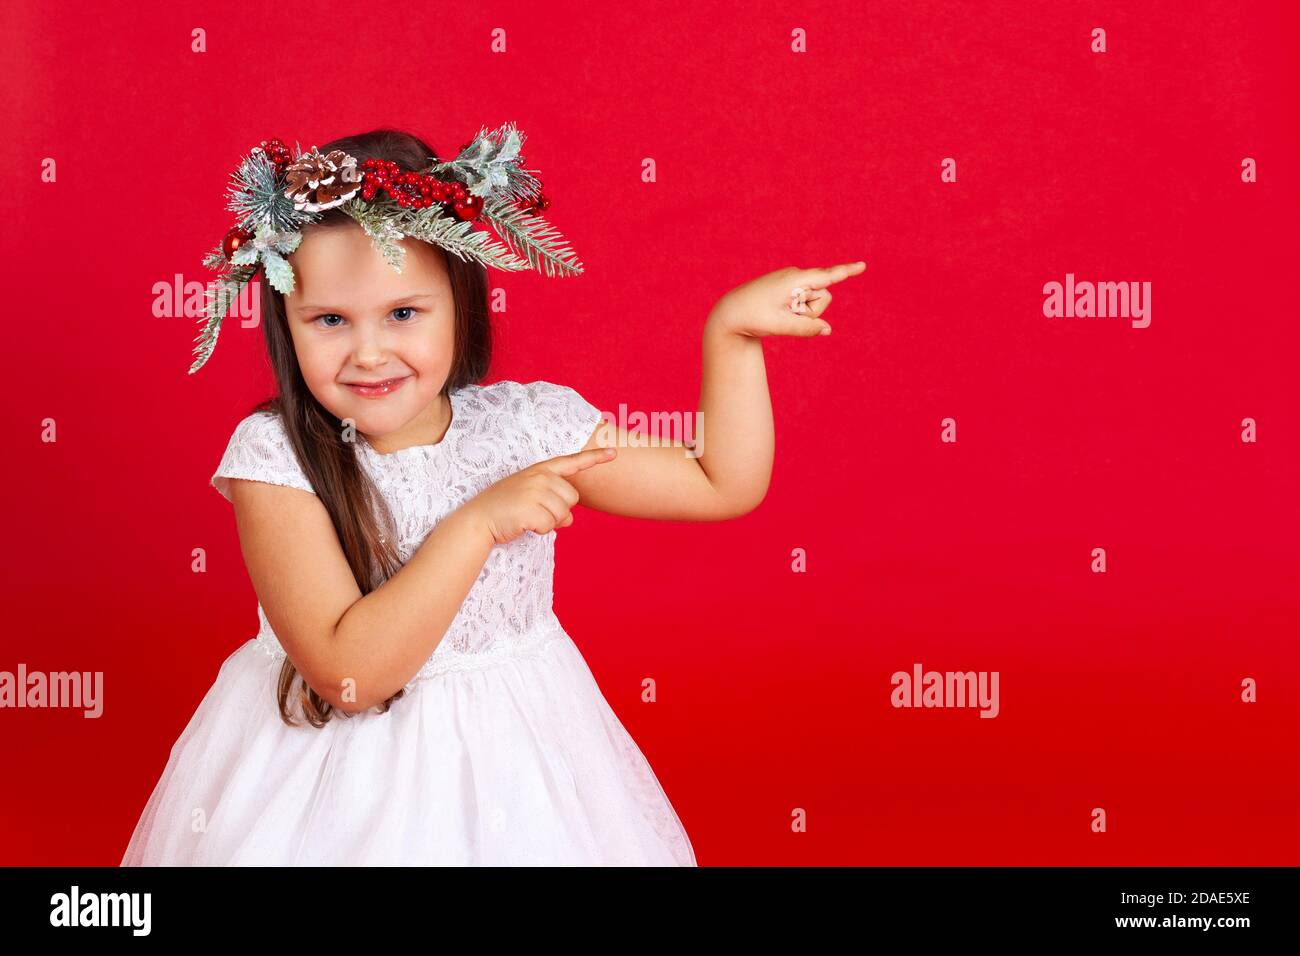 Retrato simulado de una chica sonriente en una corona de Navidad, apuntando con sus dedos índice, sobre un fondo rojo Foto de stock